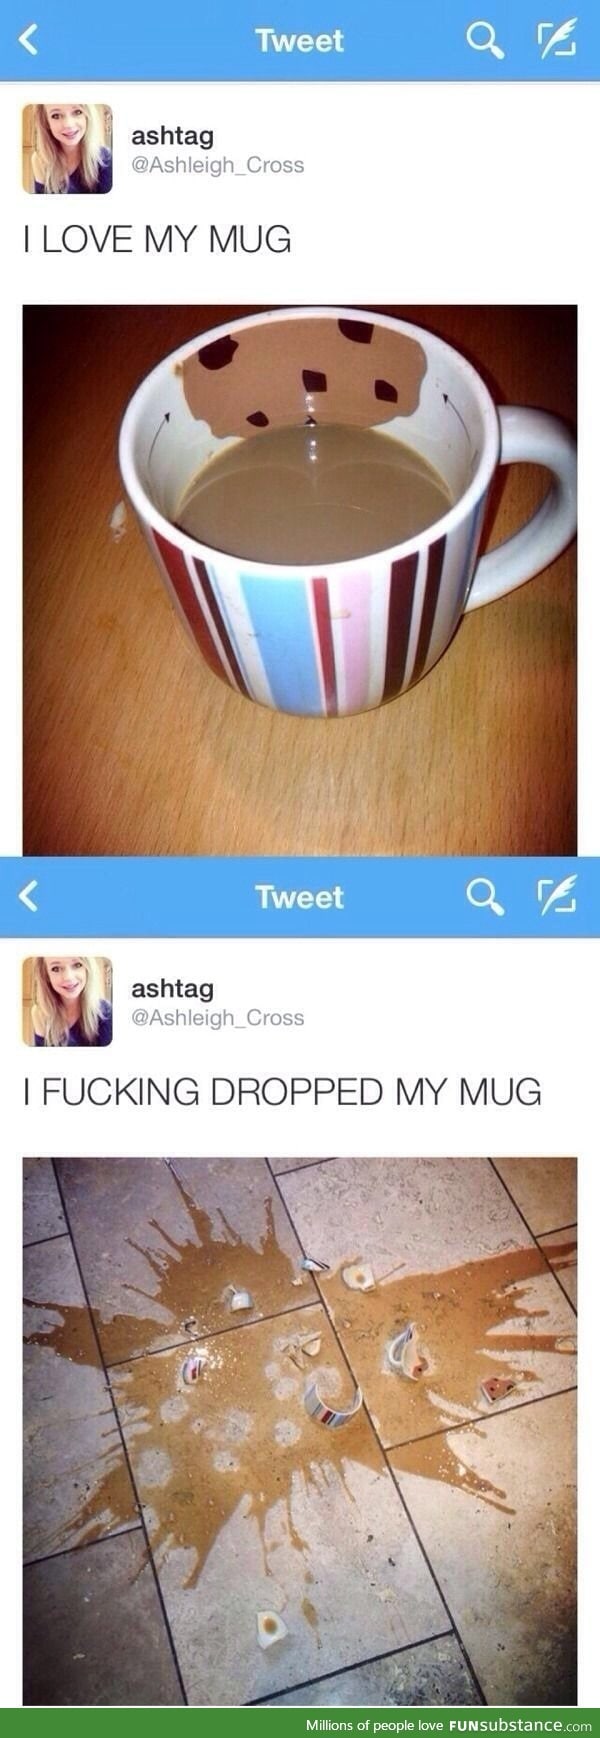 Love my mug